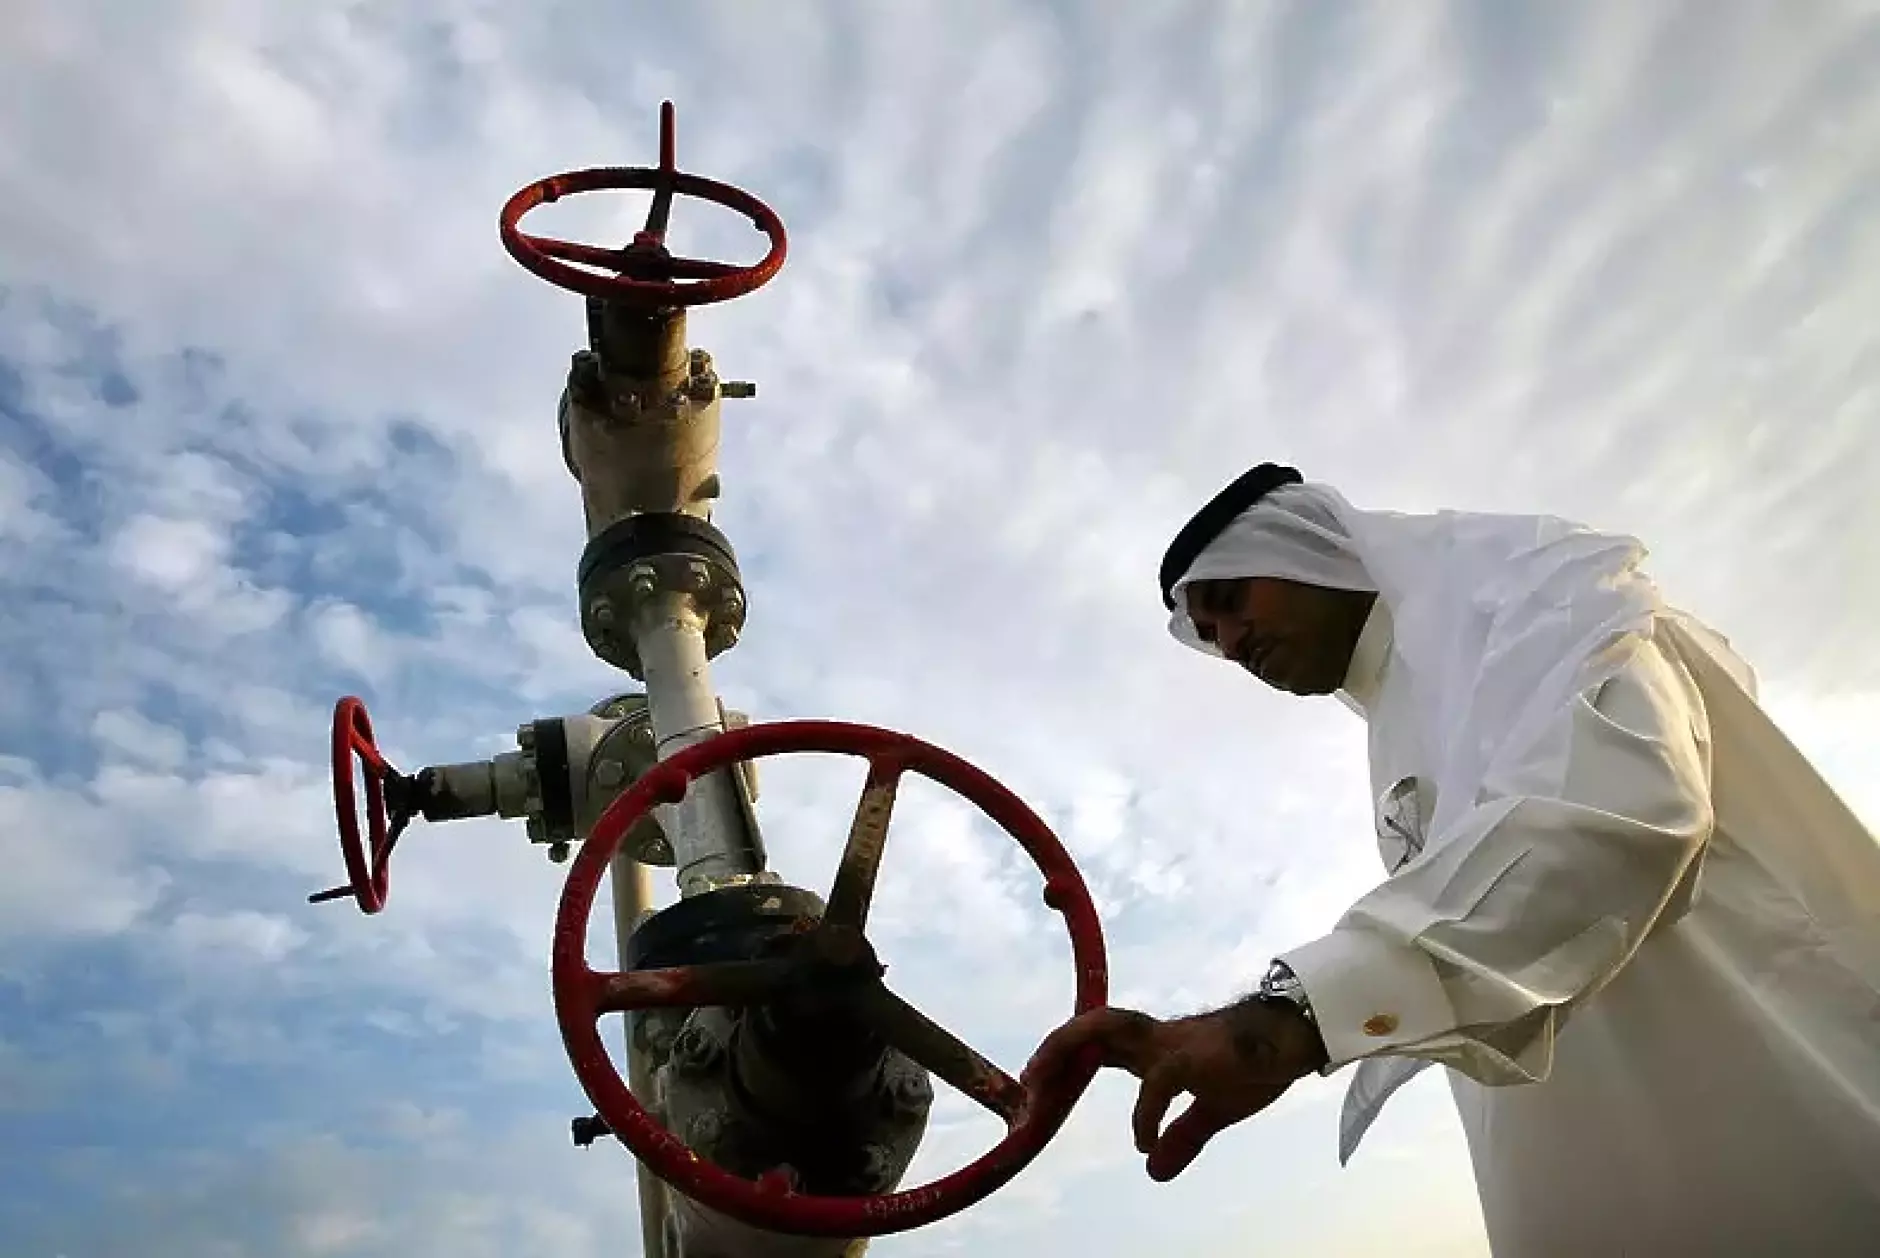 Петролът на ОПЕК се задържа на ниво от около 110 долара за барел